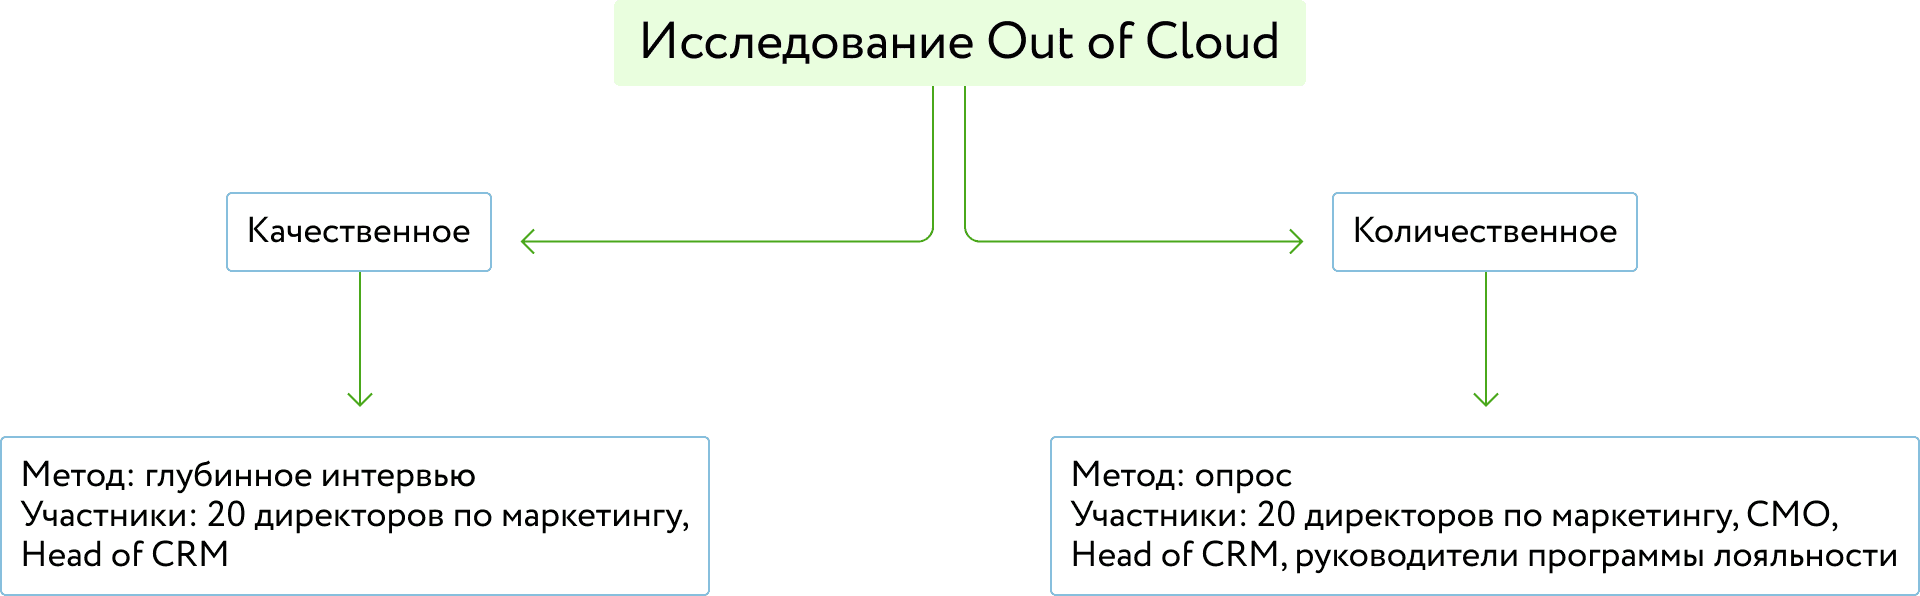 Исследование Out of Cloud